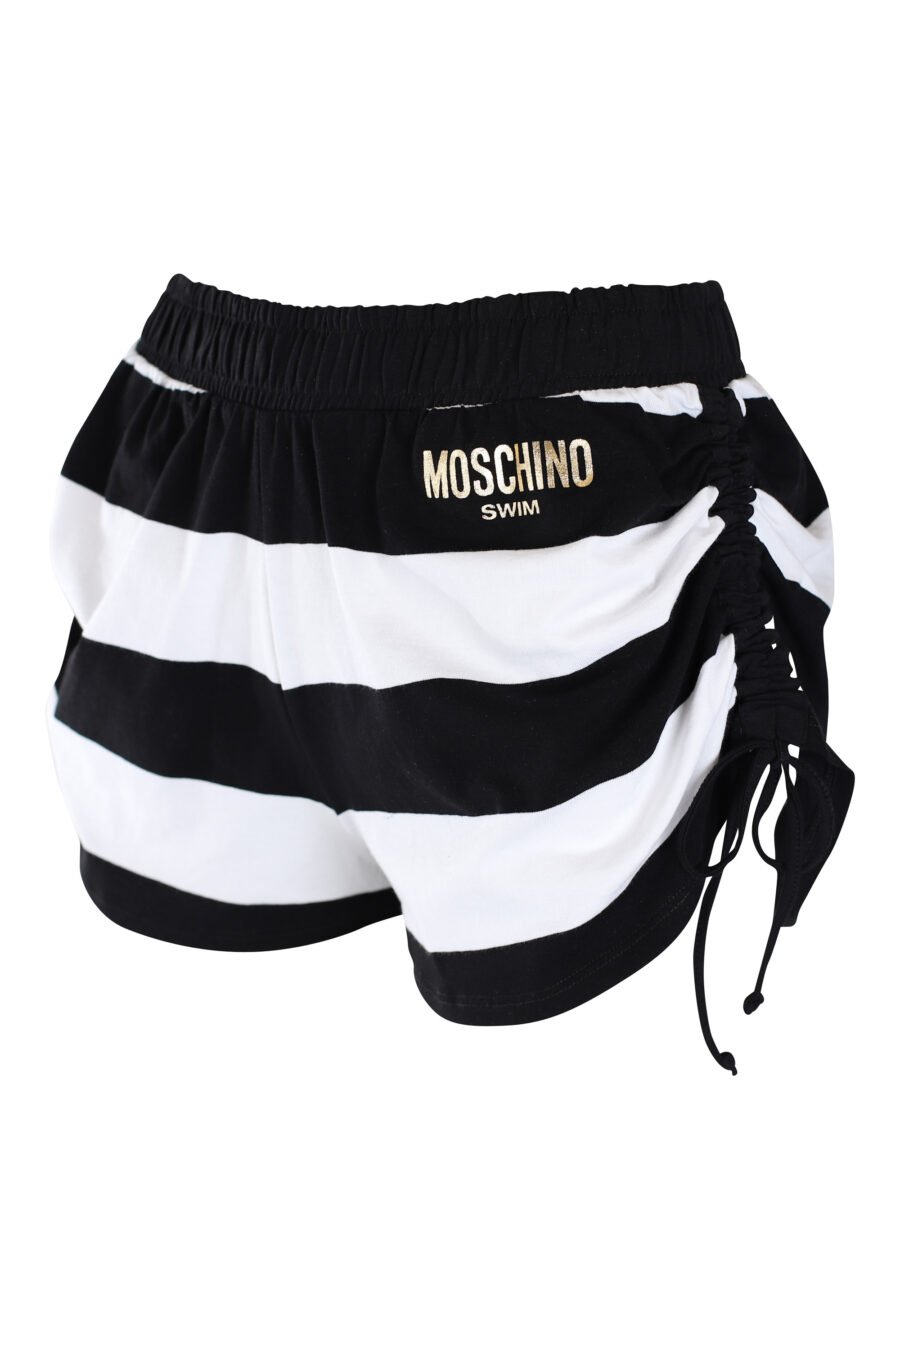 Zweifarbig schwarz-weiß gestreifte Shorts mit goldenem Mini-Logo - IMG 2250